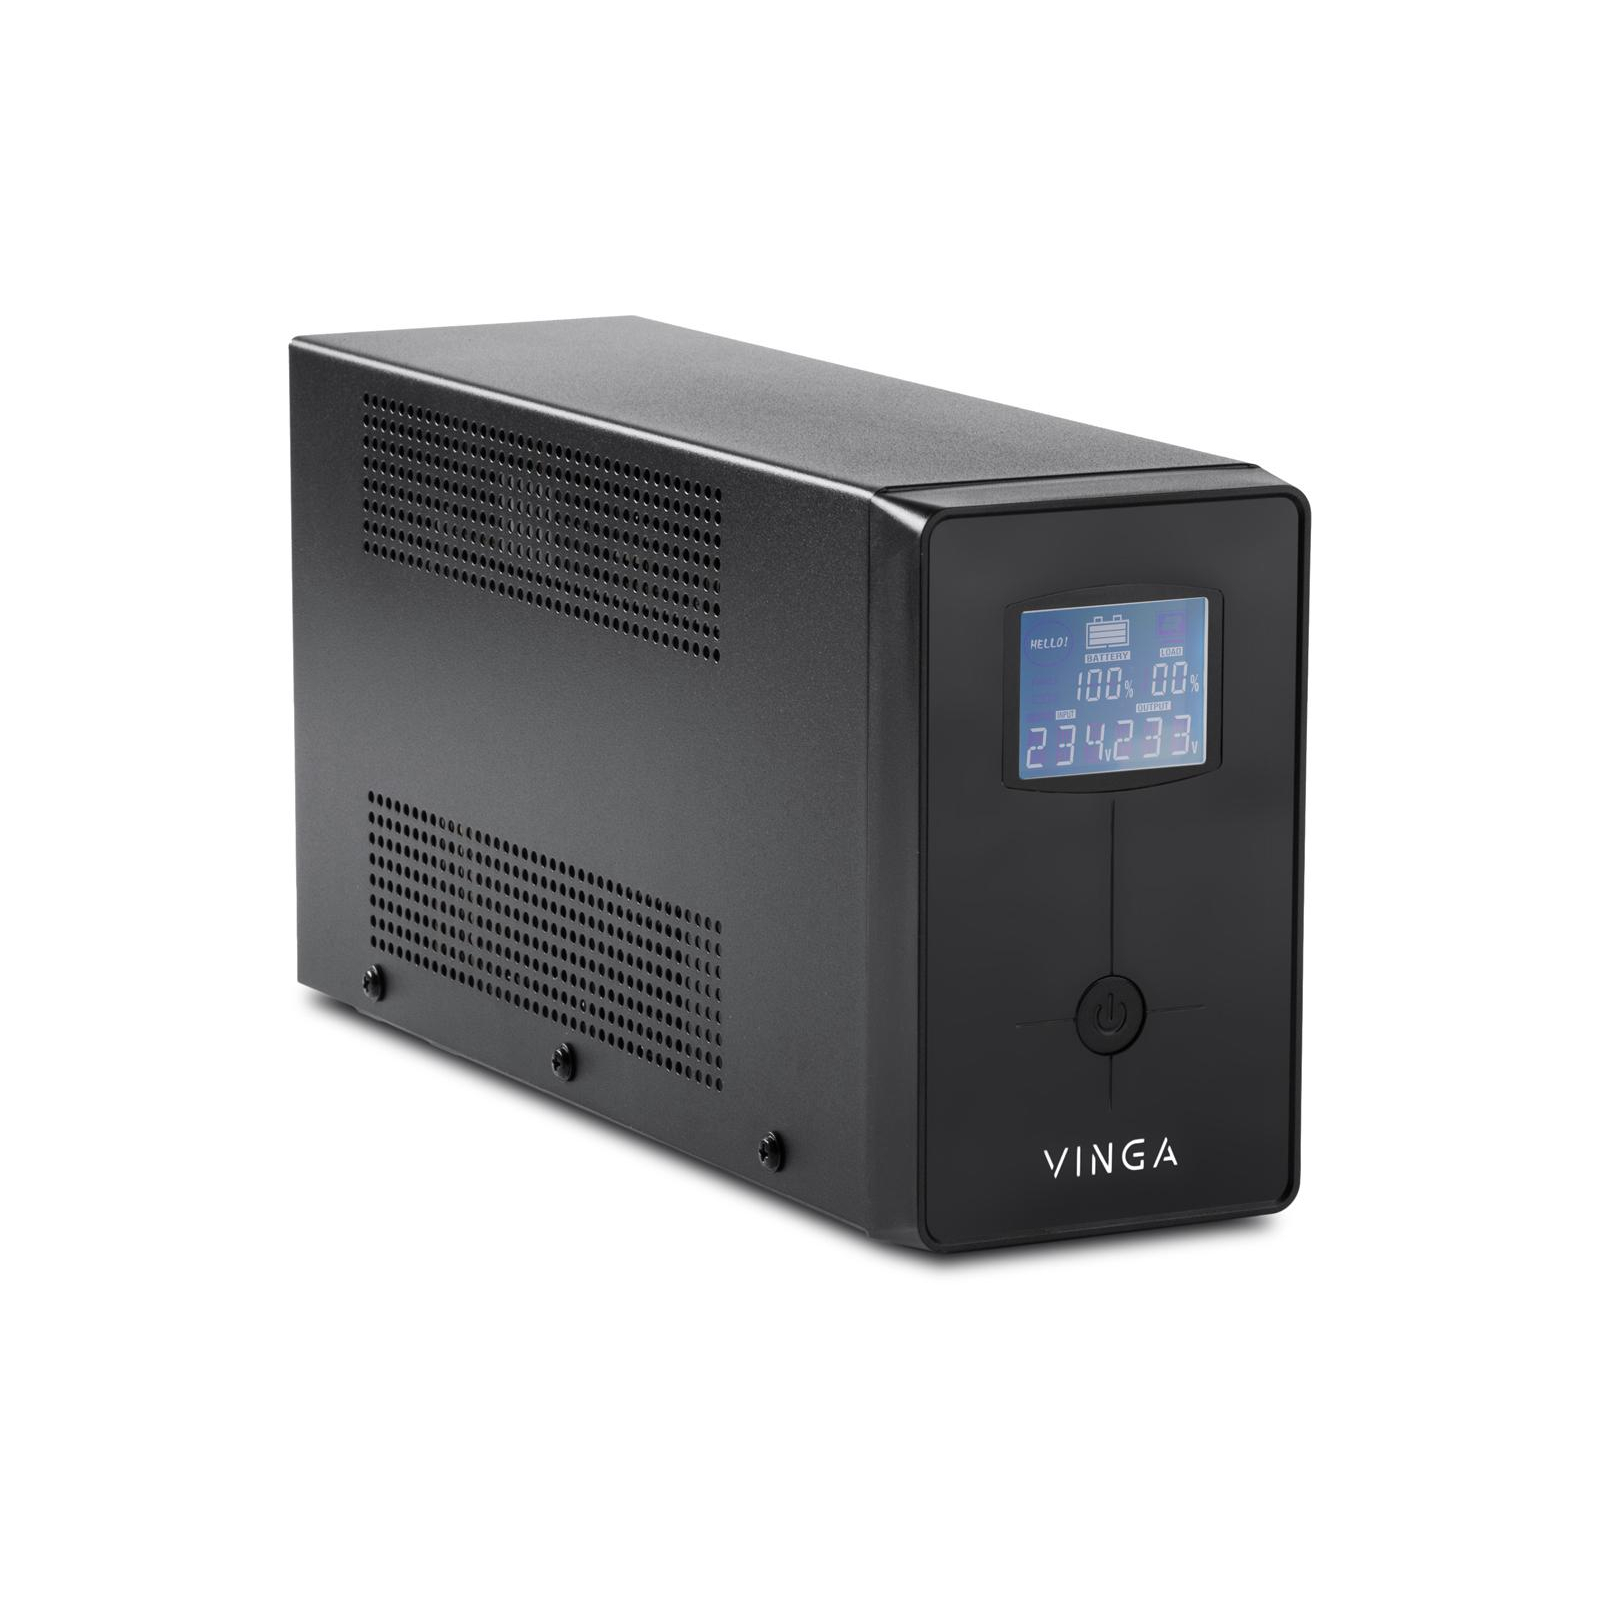 Источник бесперебойного питания Vinga LCD 1200VA metal case with USB (VPC-1200MU) изображение 2